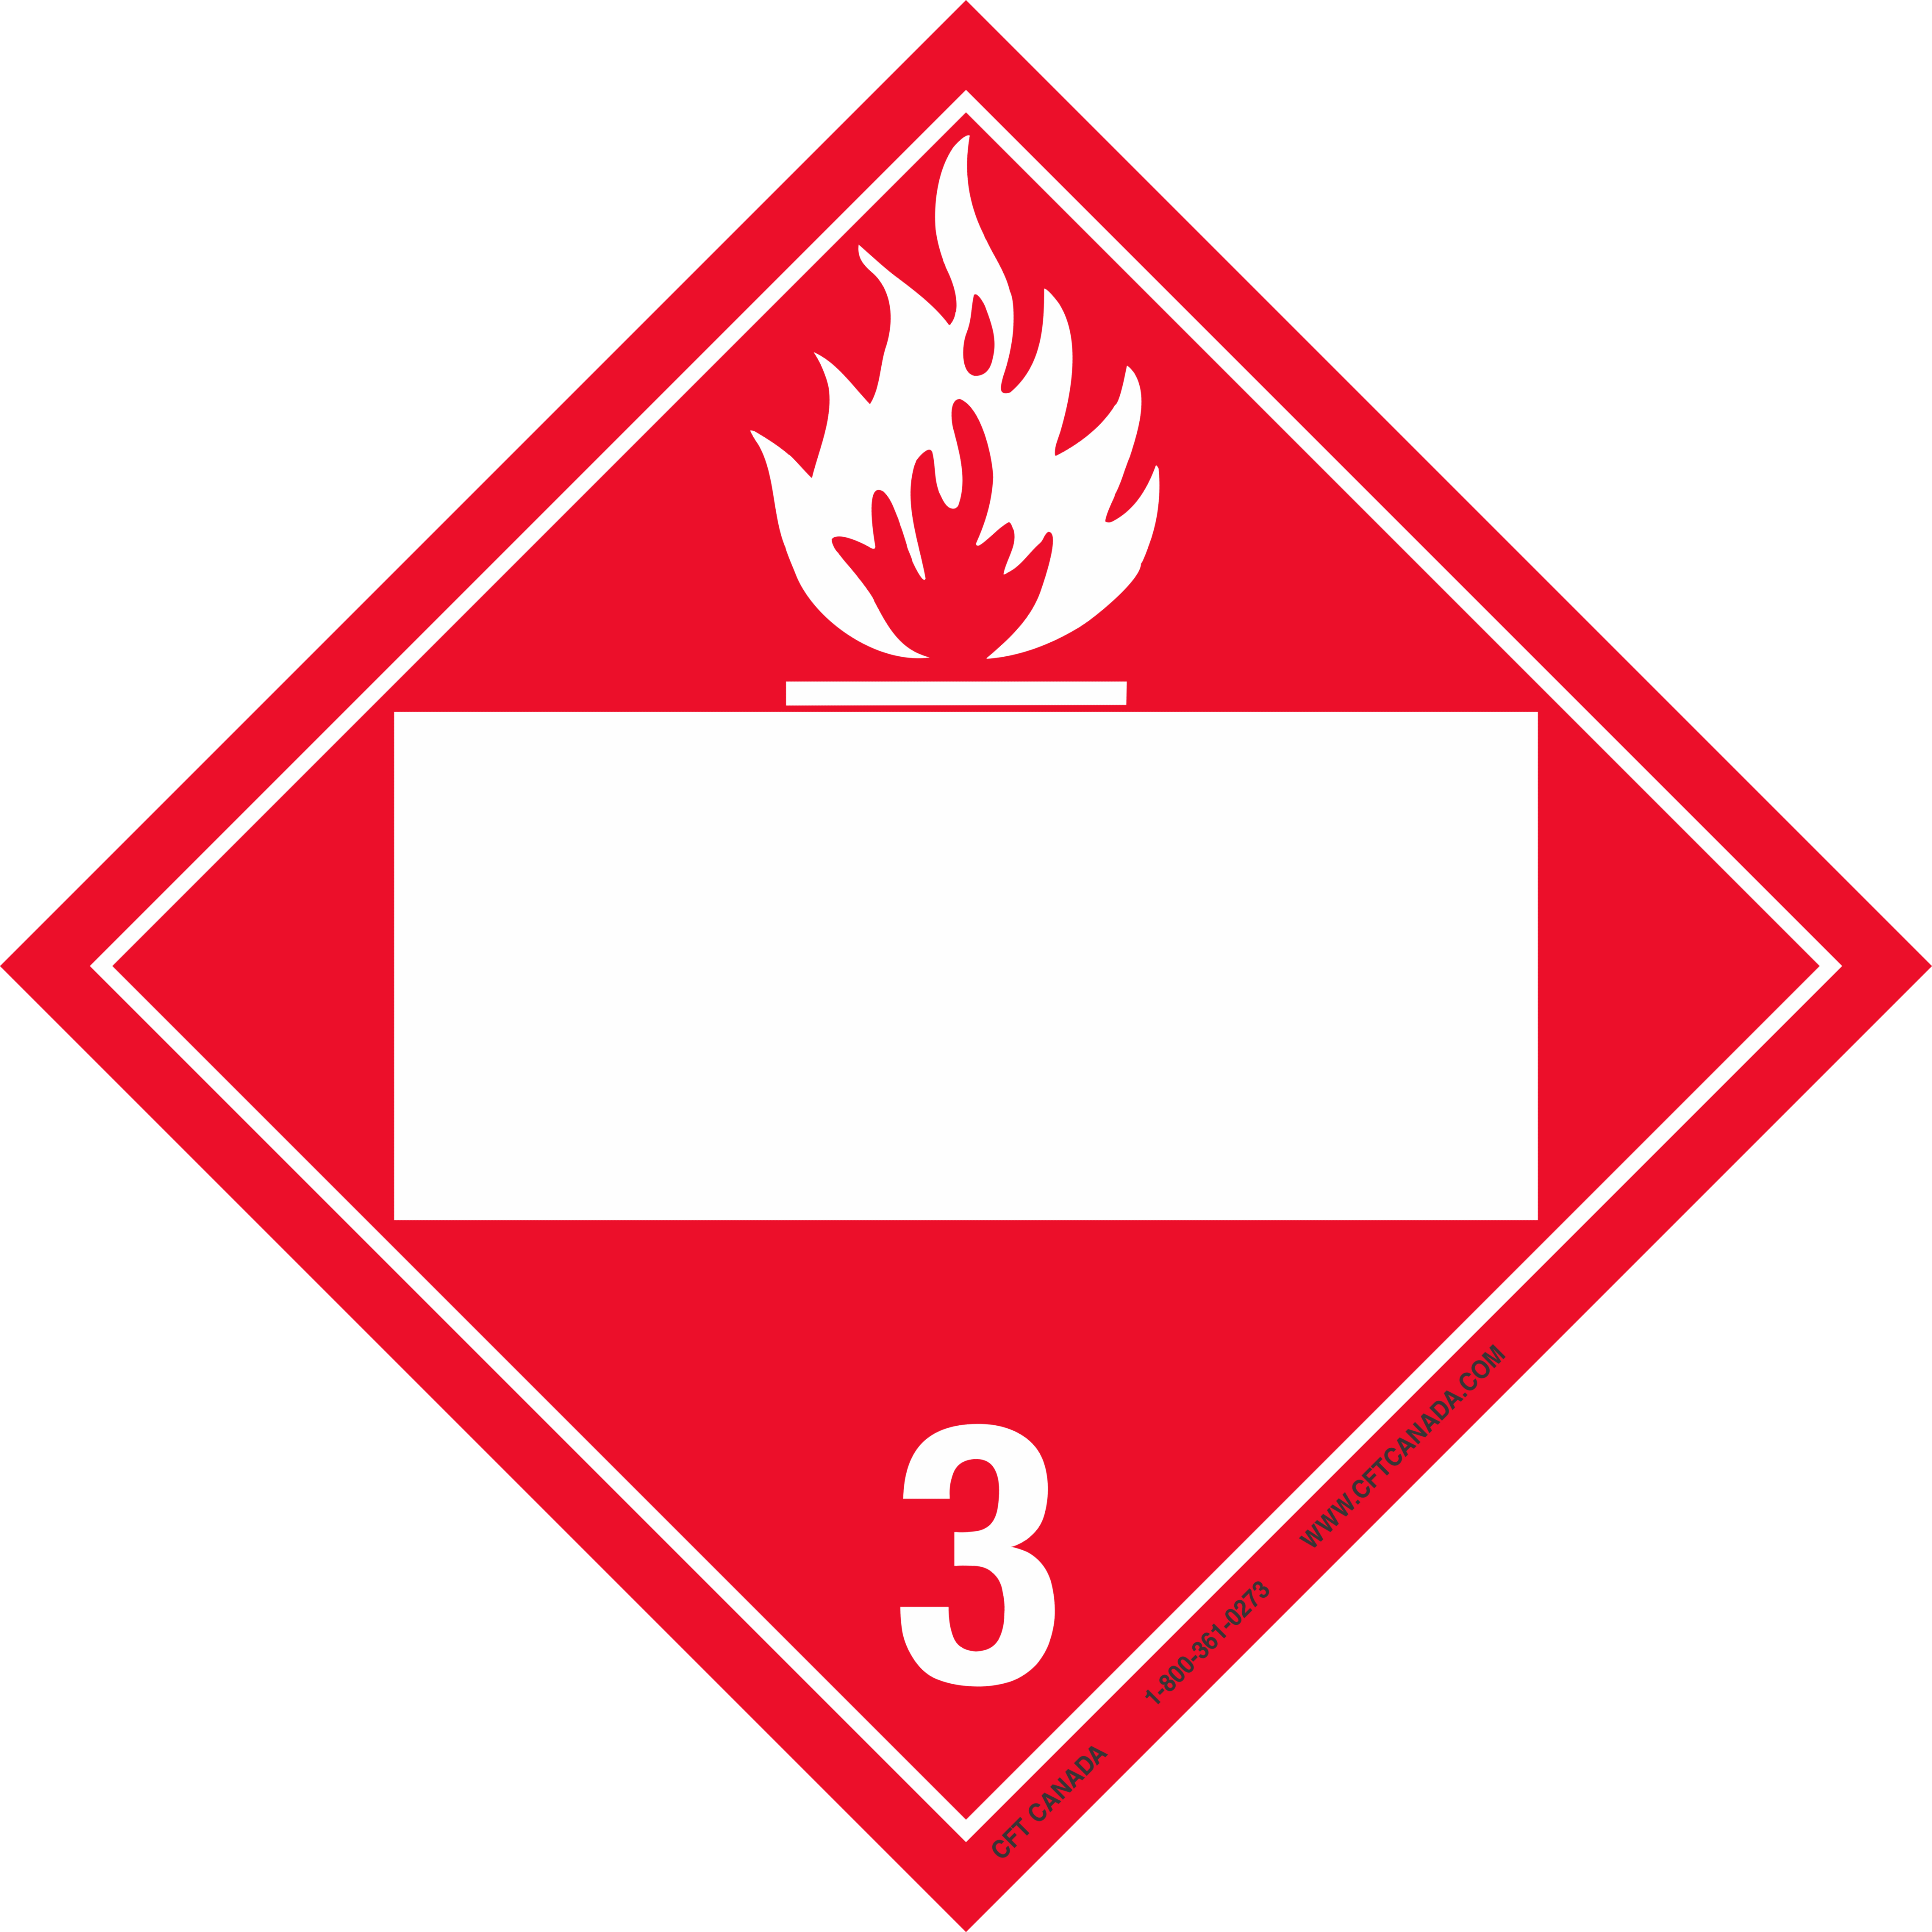 Класс 3- легковоспламеняющиеся жидкости ( ЛВЖ);. Класс 2- легковоспламеняющиеся жидкости ( ЛВЖ). Знак 3 класс опасности легковоспламеняющиеся жидкости. Знак опасности класс 3 ЛВЖ.